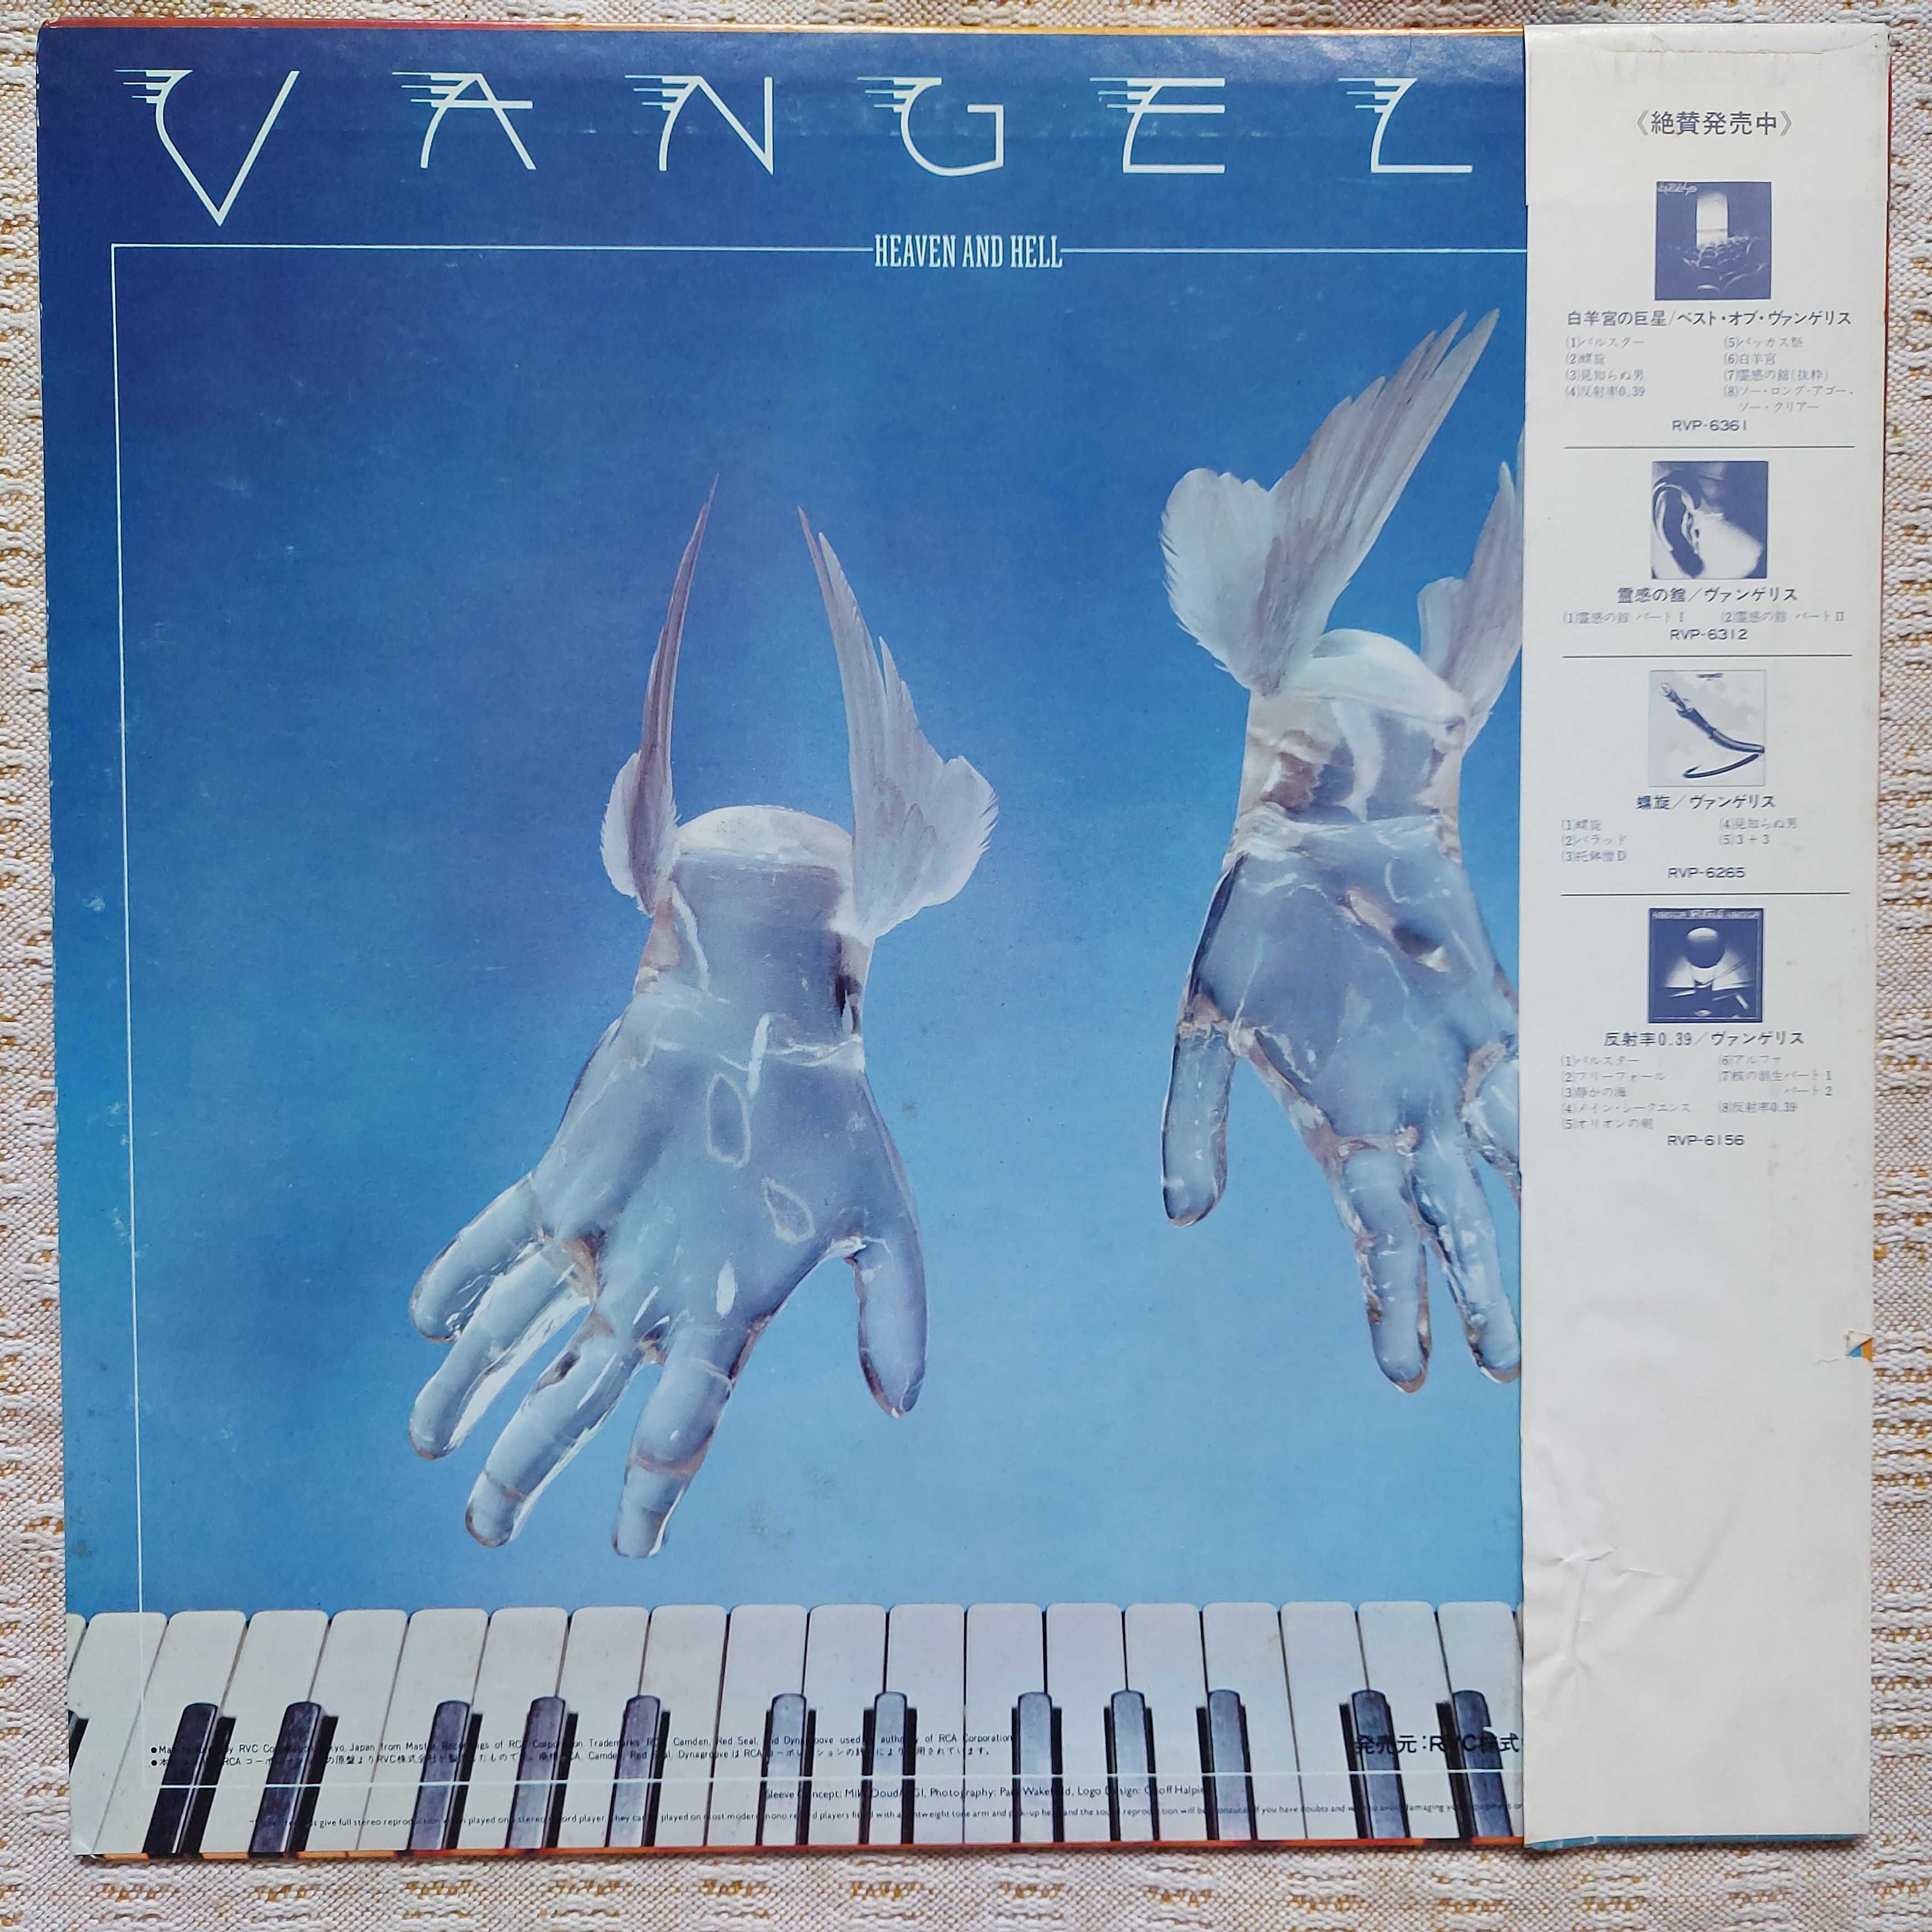 Vangelis  Heaven And Hell   1980  Japan   (NM/EX+)